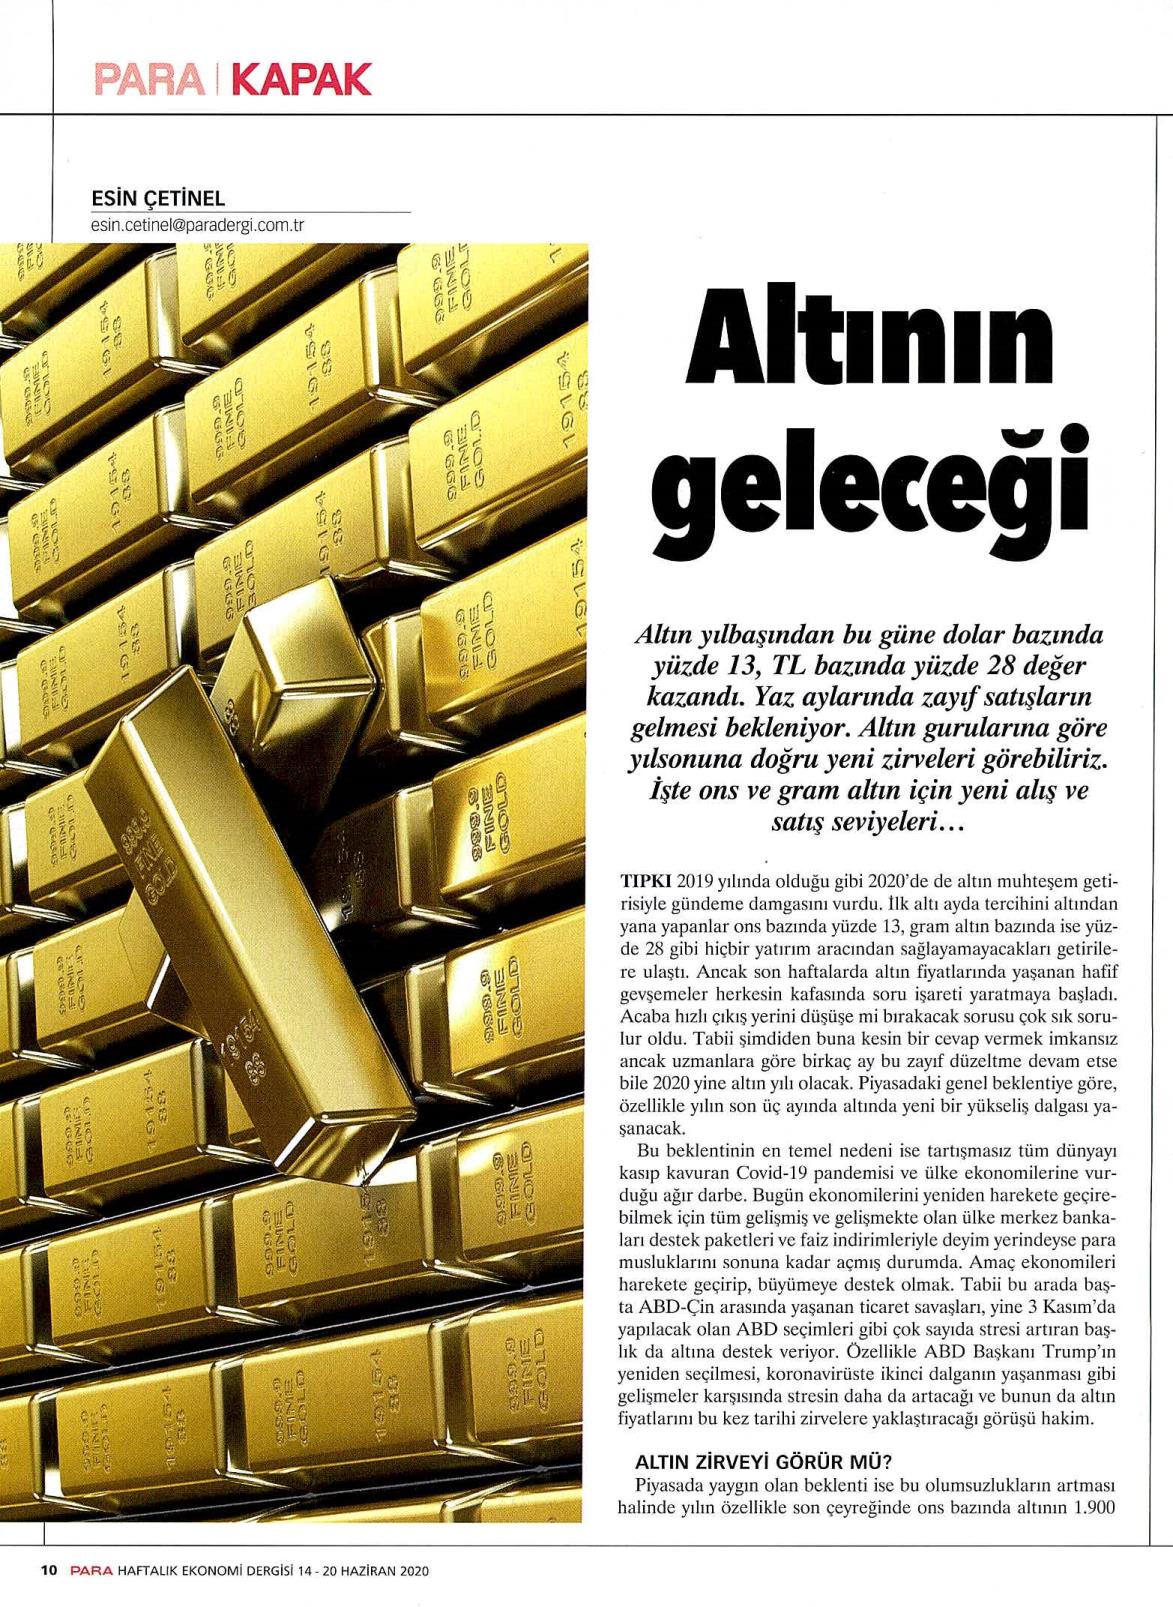 Altının Geleceği - Para Dergisi